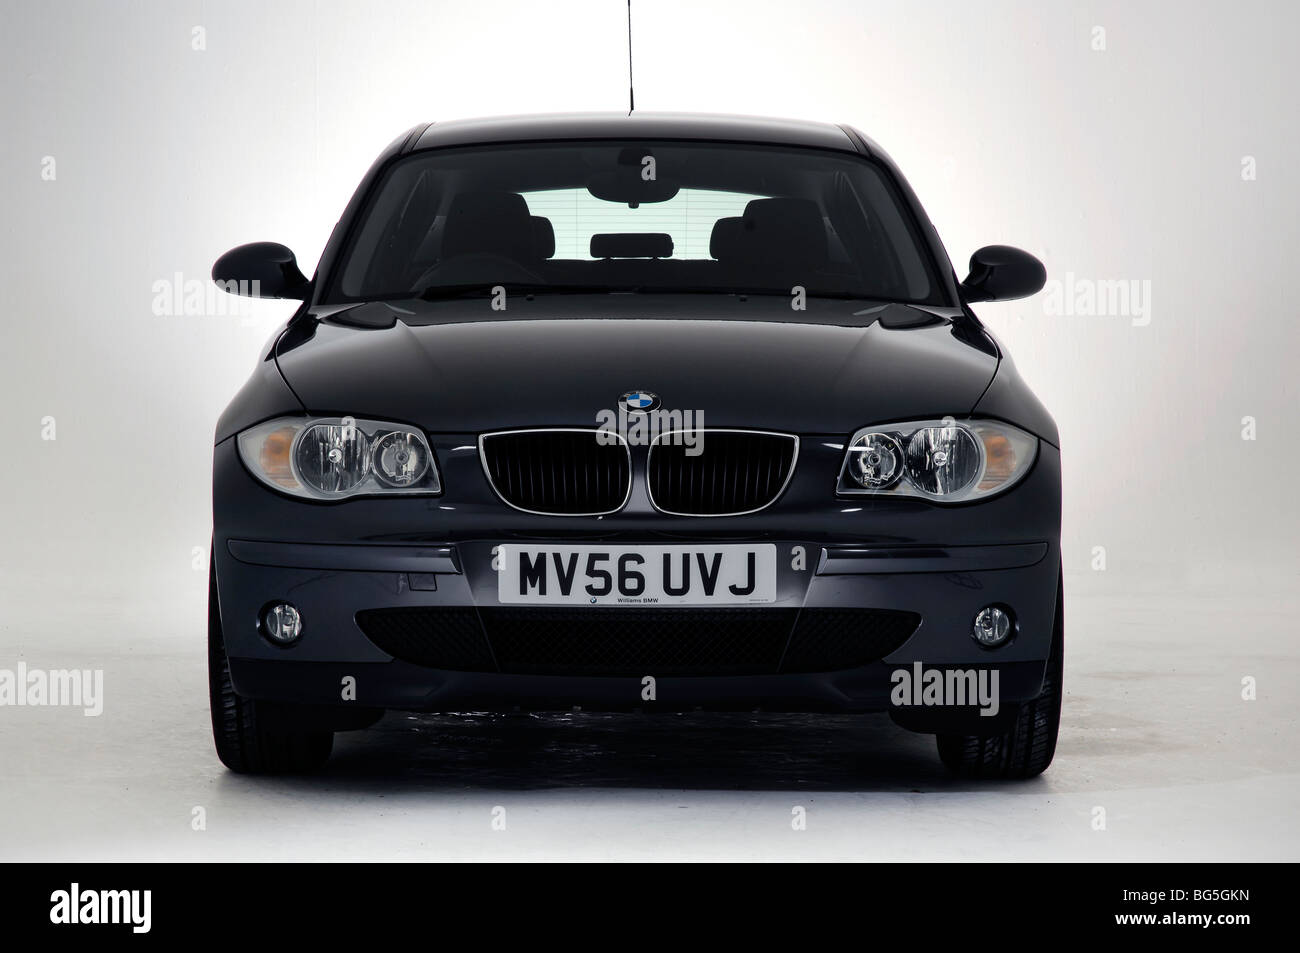 2006 BMW 116i Stock Photo - Alamy